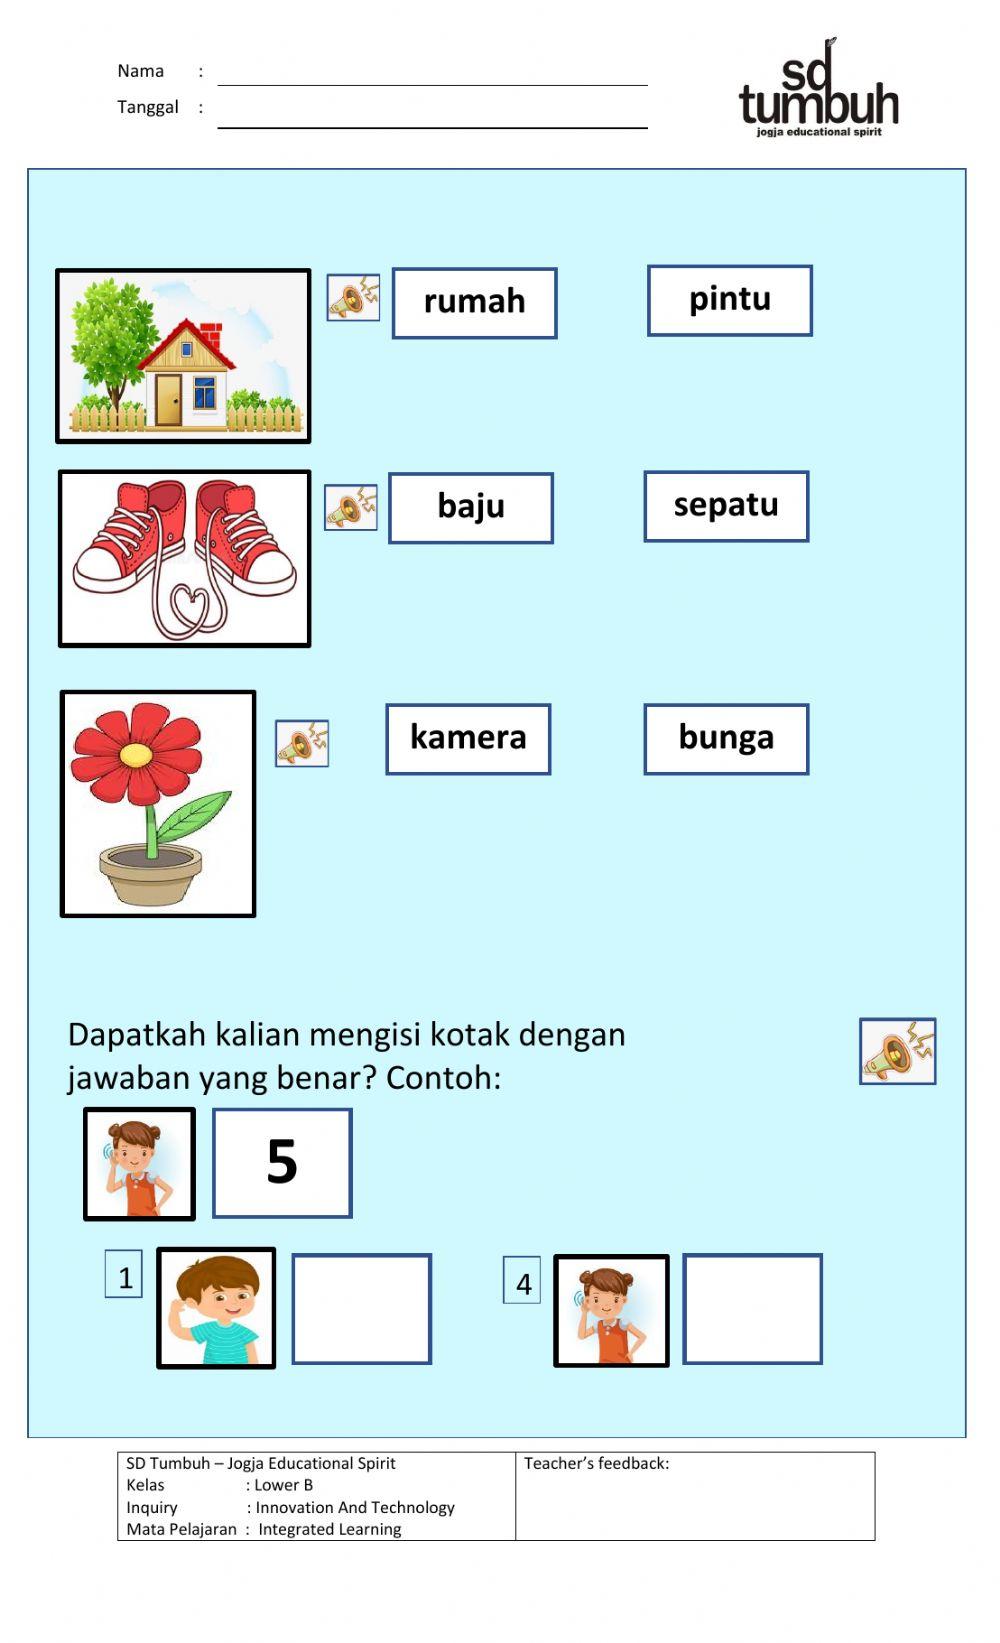 Review Bahasa Indonesia dan Matematika C